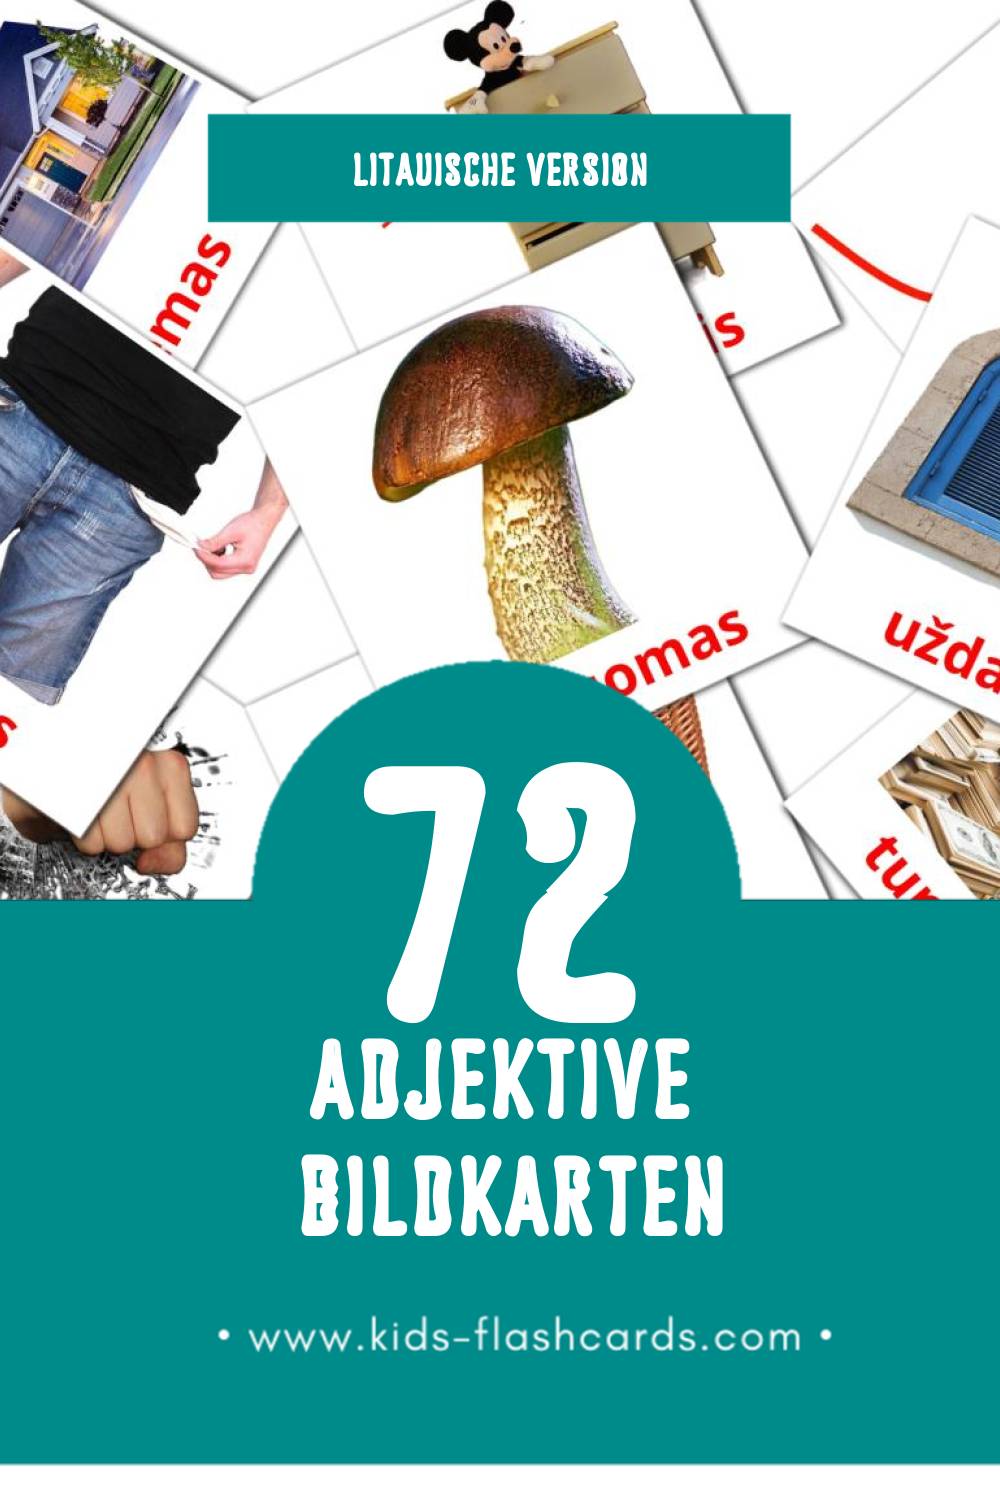 Visual būdvardžiai Flashcards für Kleinkinder (72 Karten in Litauisch)